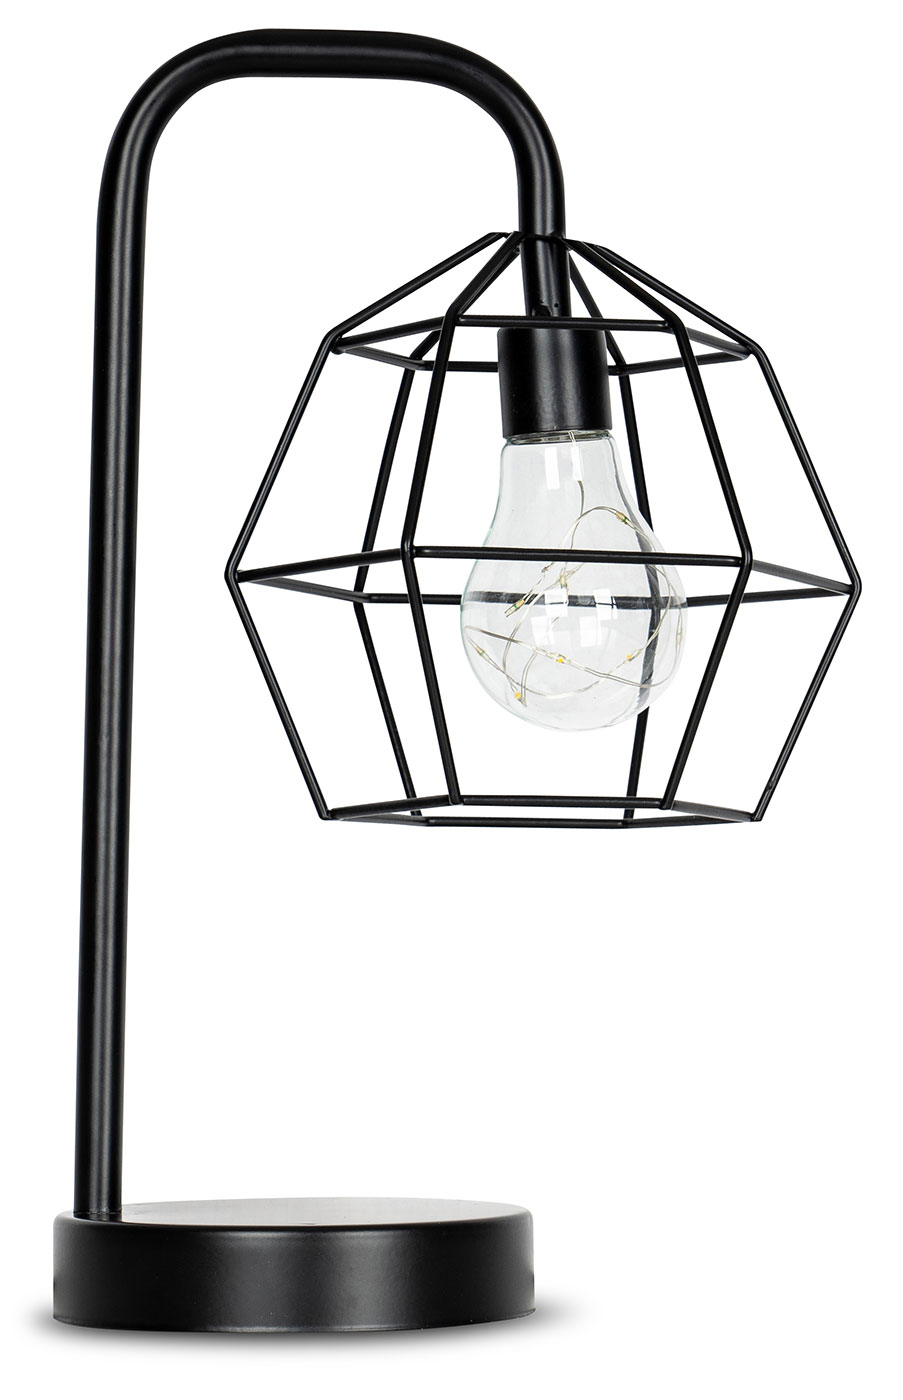 levandeo Tischlampe Metall Schwarz LED 33cm Hoch Lampe Standleuchte Leuchte Deko